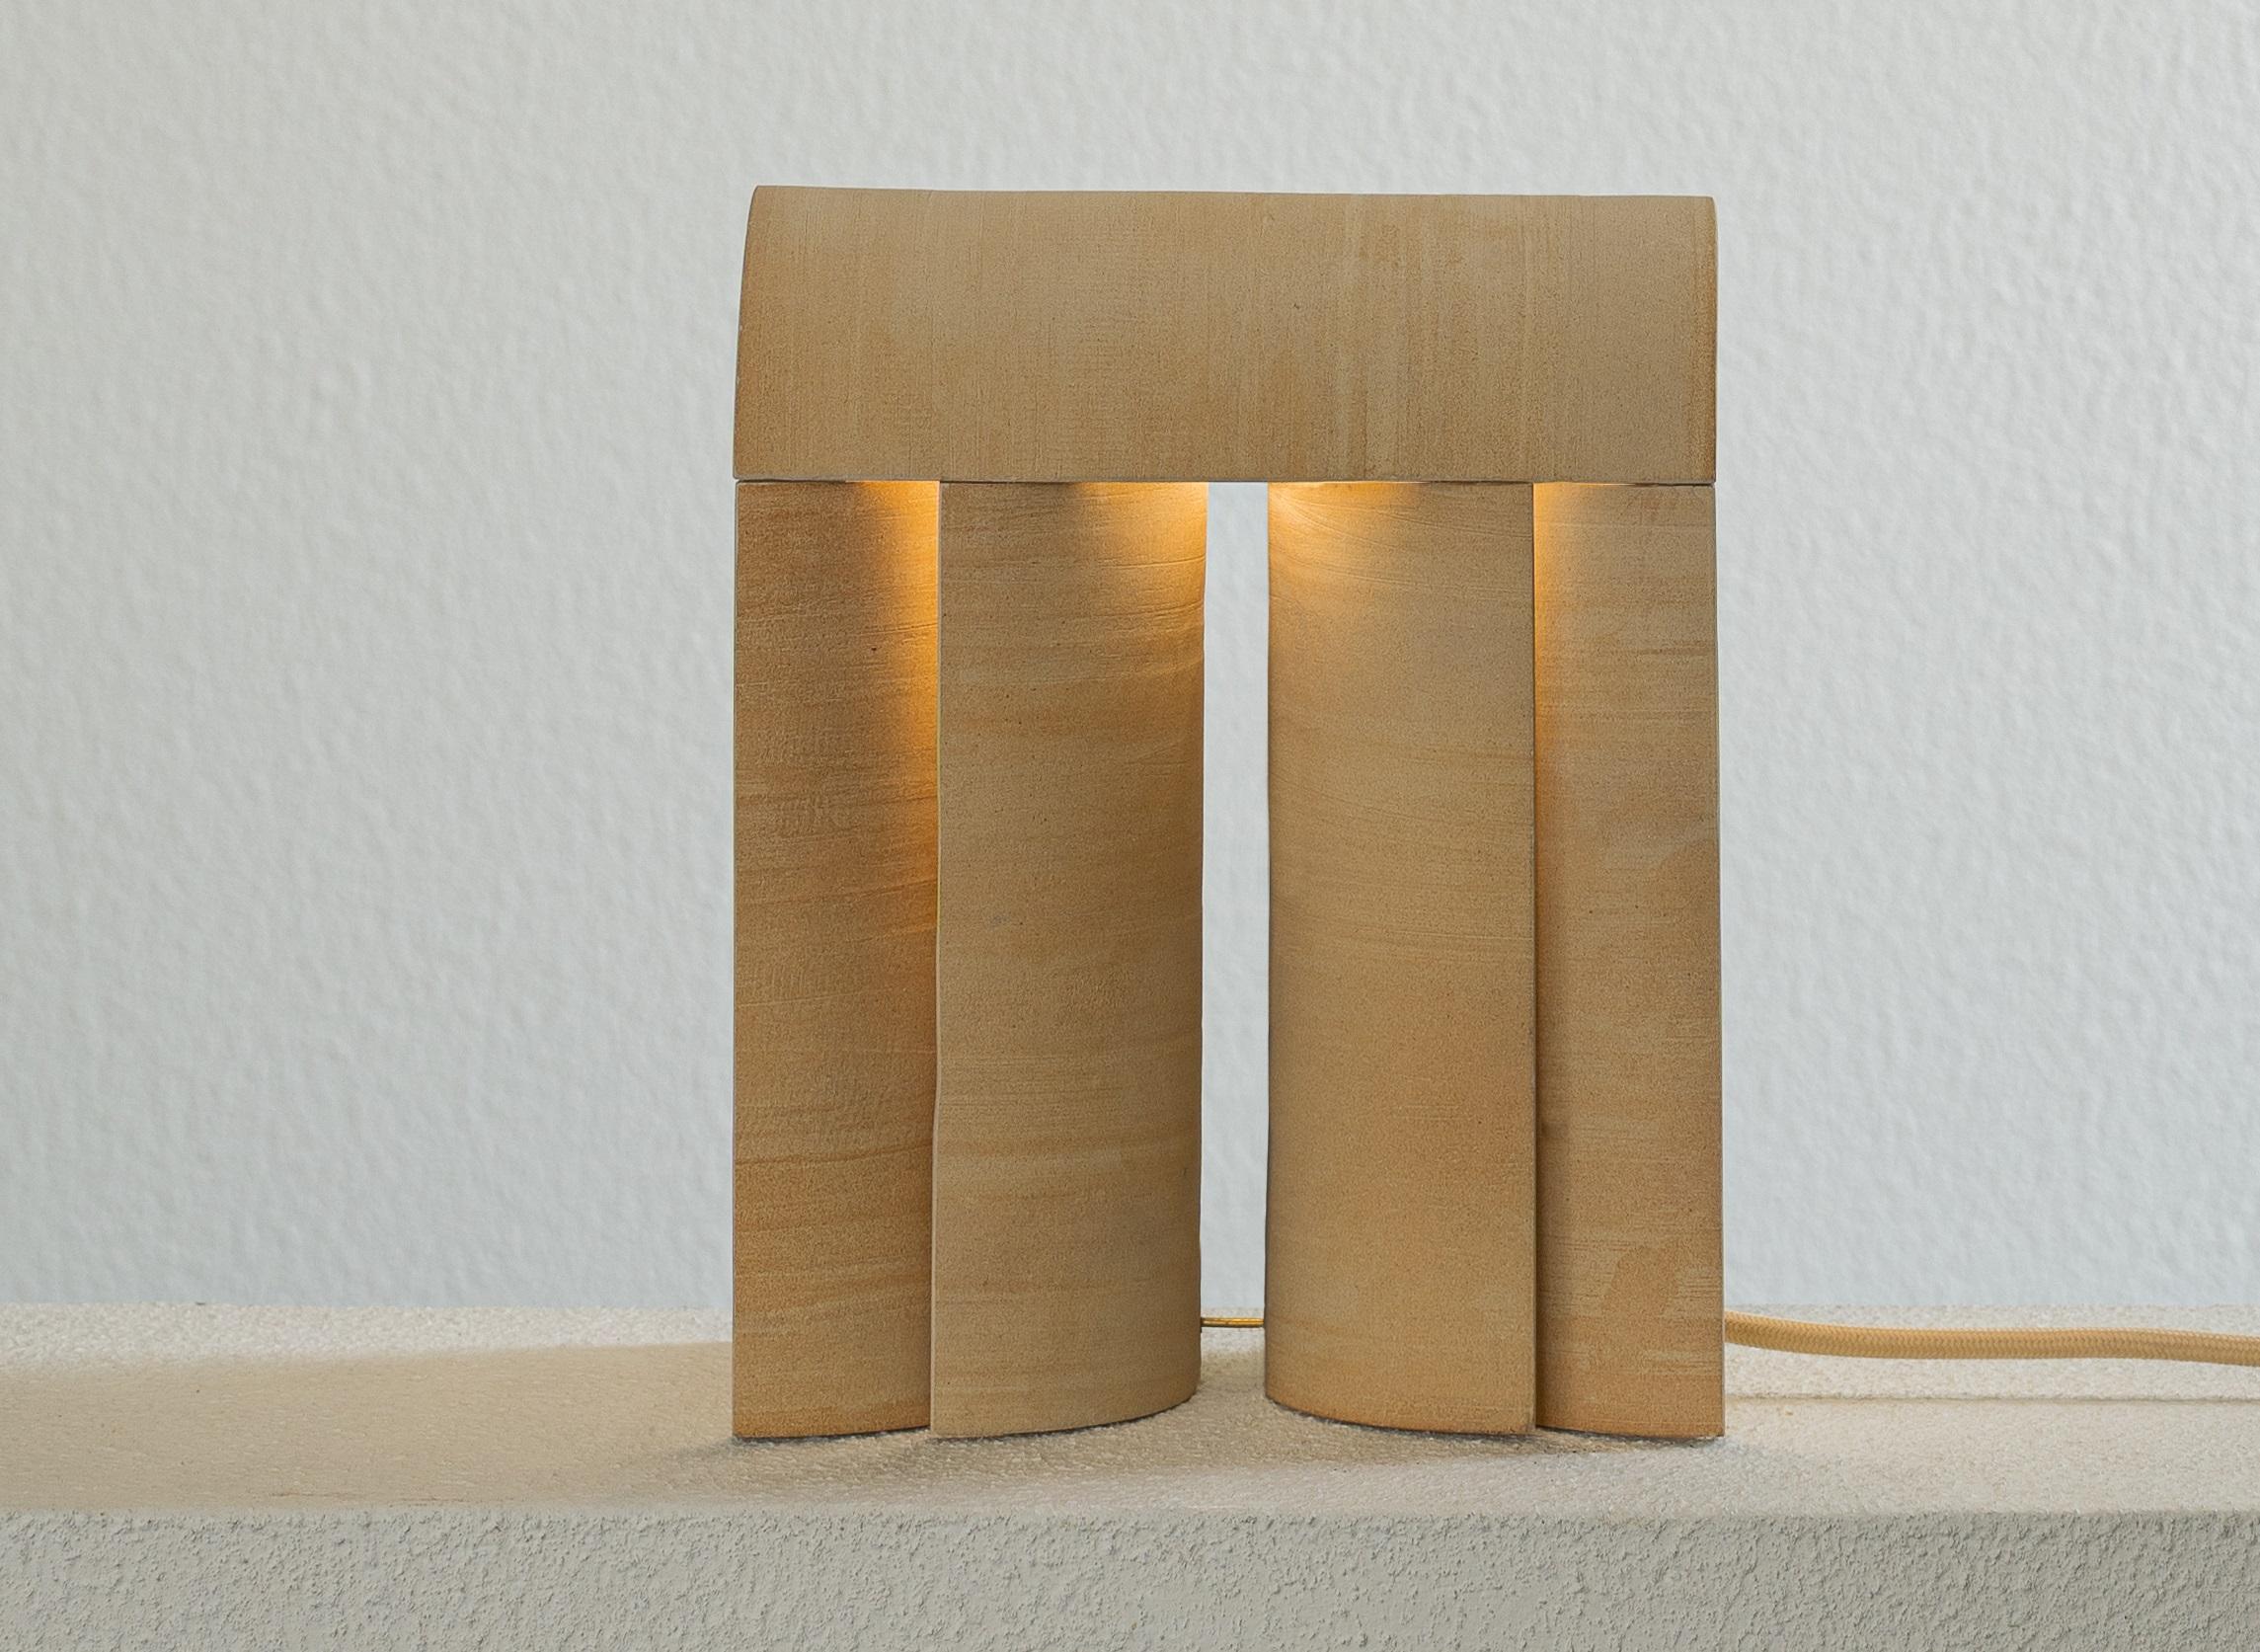 Lampe Layers of III von Evelina Kudabaite 
MATERIALIEN: Steingut
Abmessungen: T 12 x B 20 x H 24 cm.
Ein Unikat.
Kleine und große Größen verfügbar. 
Alle unsere Lampen können je nach Land verkabelt werden. Wenn es in die USA verkauft wird, wird